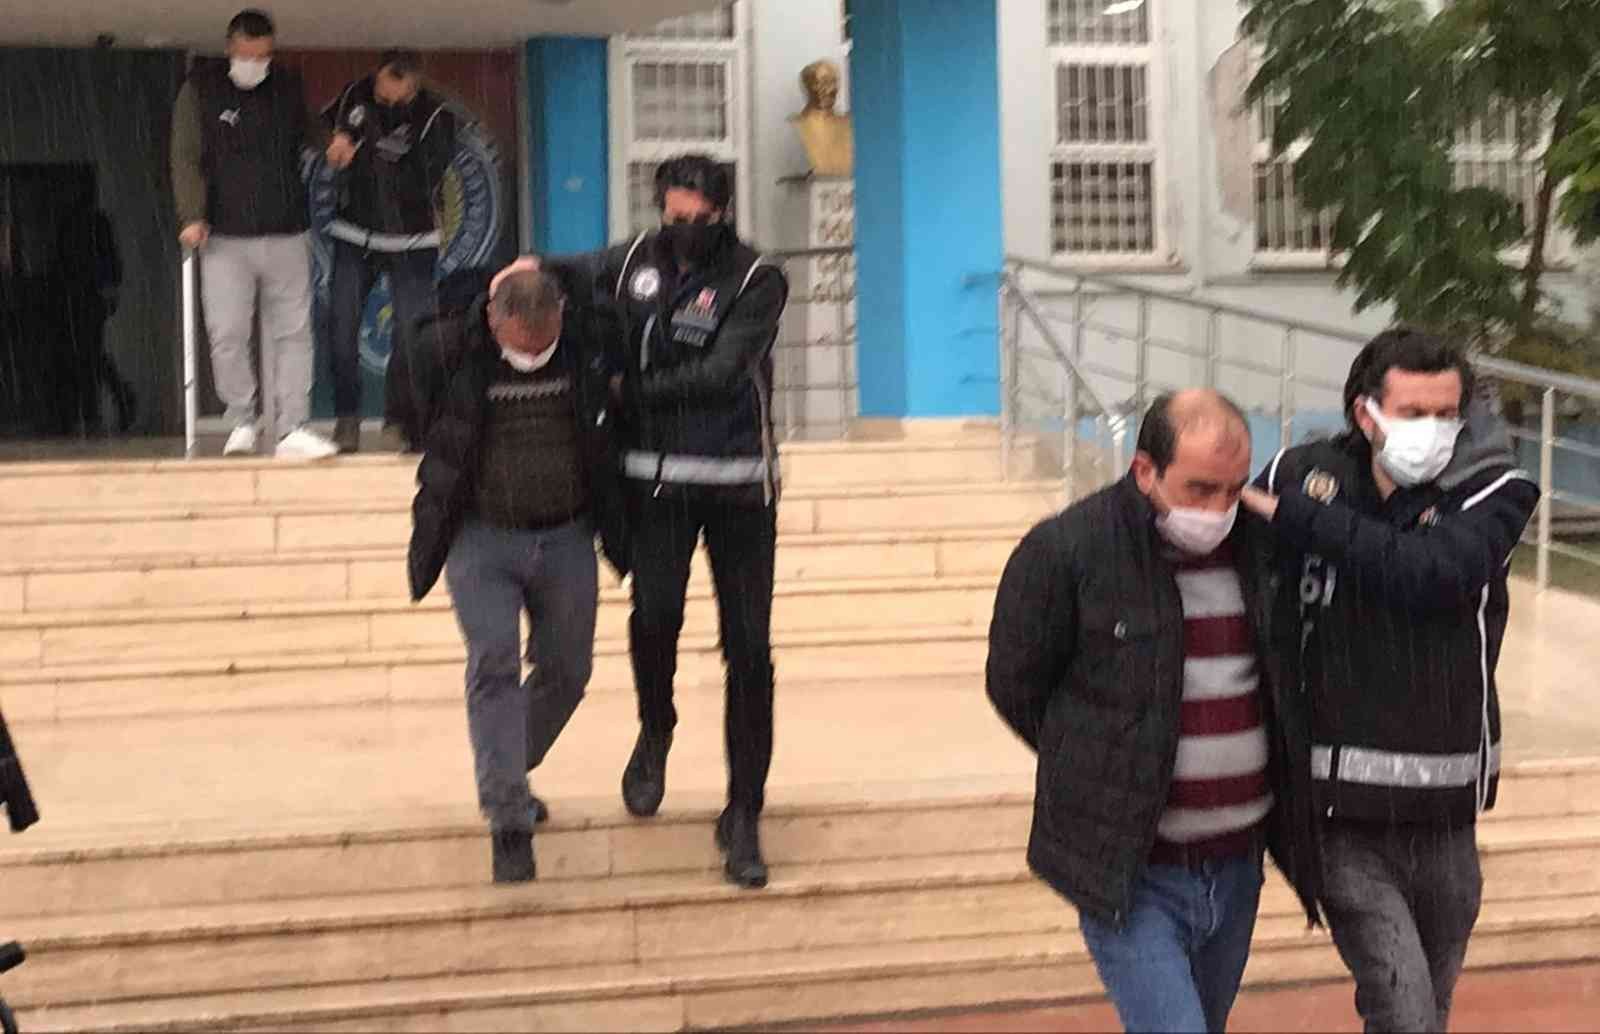 İzmir’de silah kaçakçılığı ve uyuşturucu operasyonu: 3 tutuklama #izmir